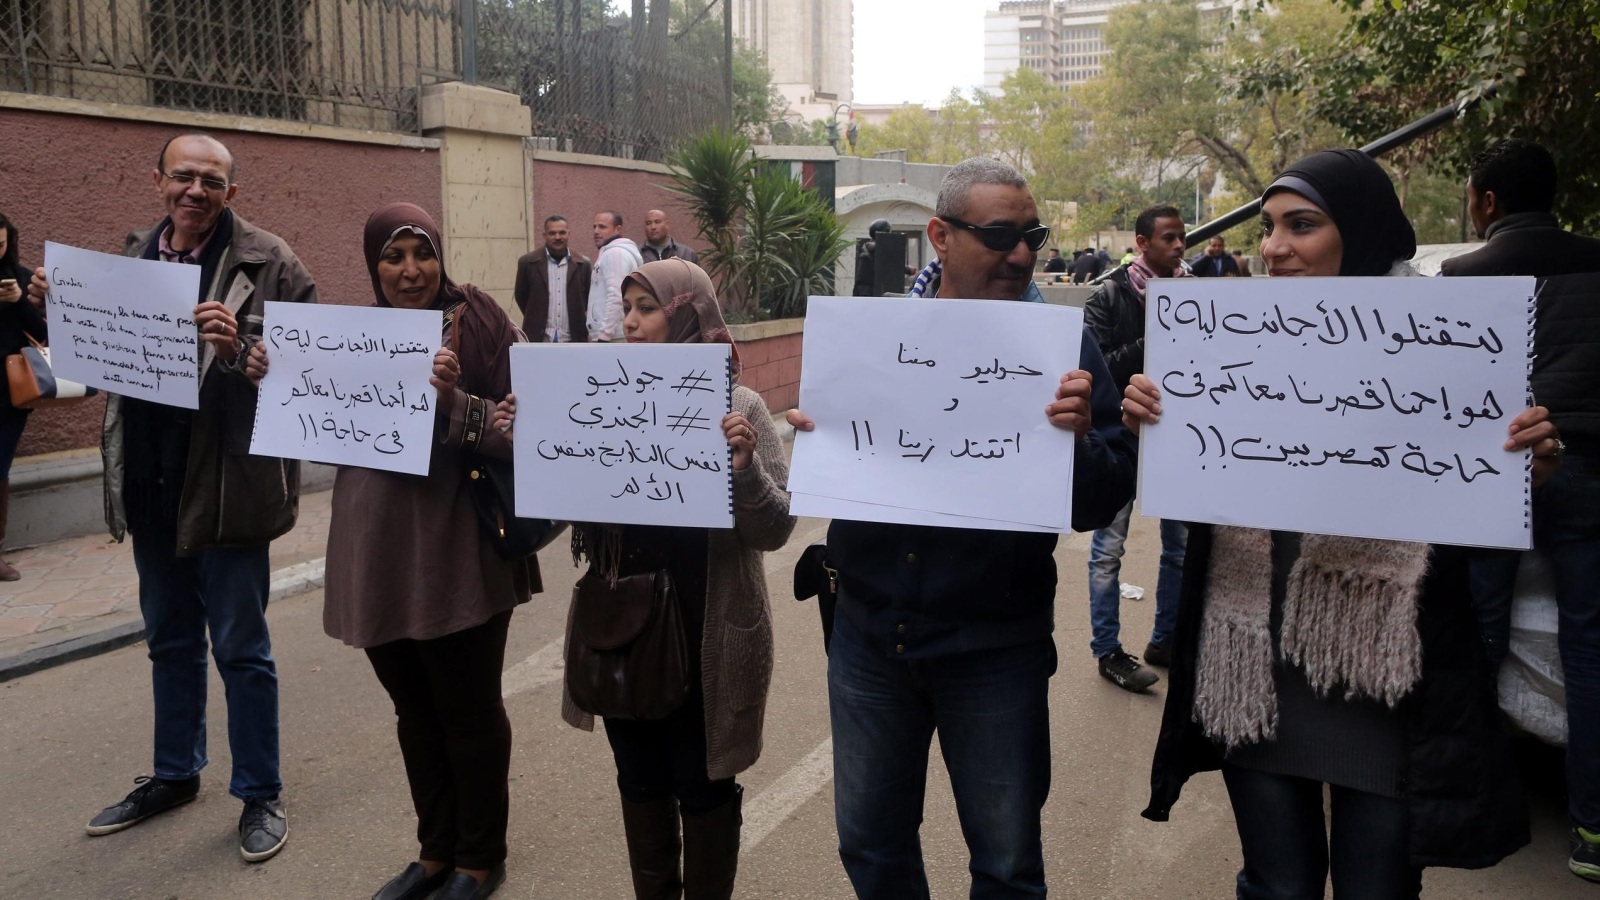 ‪نشطاء مصريون يرفعون لافتات ساخرة تندد بمقتل المواطن الإيطالي جوليو ريجيني في القاهرة (الأوروبية)‬ نشطاء مصريون يرفعون لافتات ساخرة تندد بمقتل المواطن الإيطالي جوليو ريجيني في القاهرة (الأوروبية)